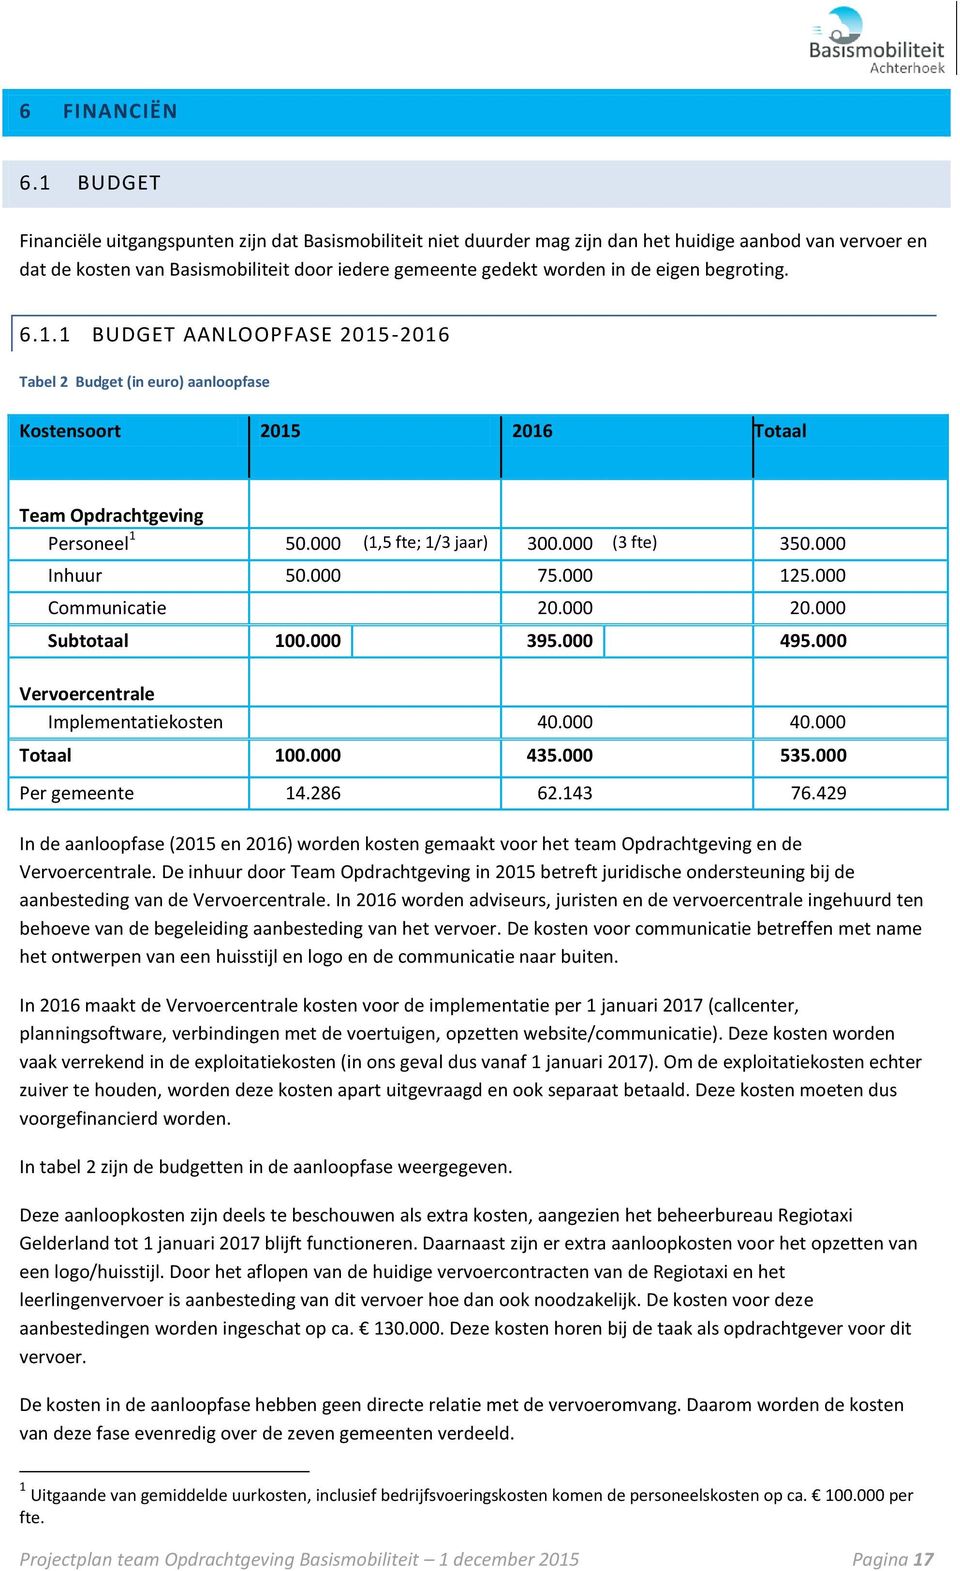 eigen begroting. 6.1.1 BUDGET AANLOOPFASE 2015-2016 Tabel 2 Budget (in euro) aanloopfase Kostensoort 2015 2016 Totaal Team Opdrachtgeving Personeel 1 50.000 (1,5 fte; 1/3 jaar) 300.000 (3 fte) 350.